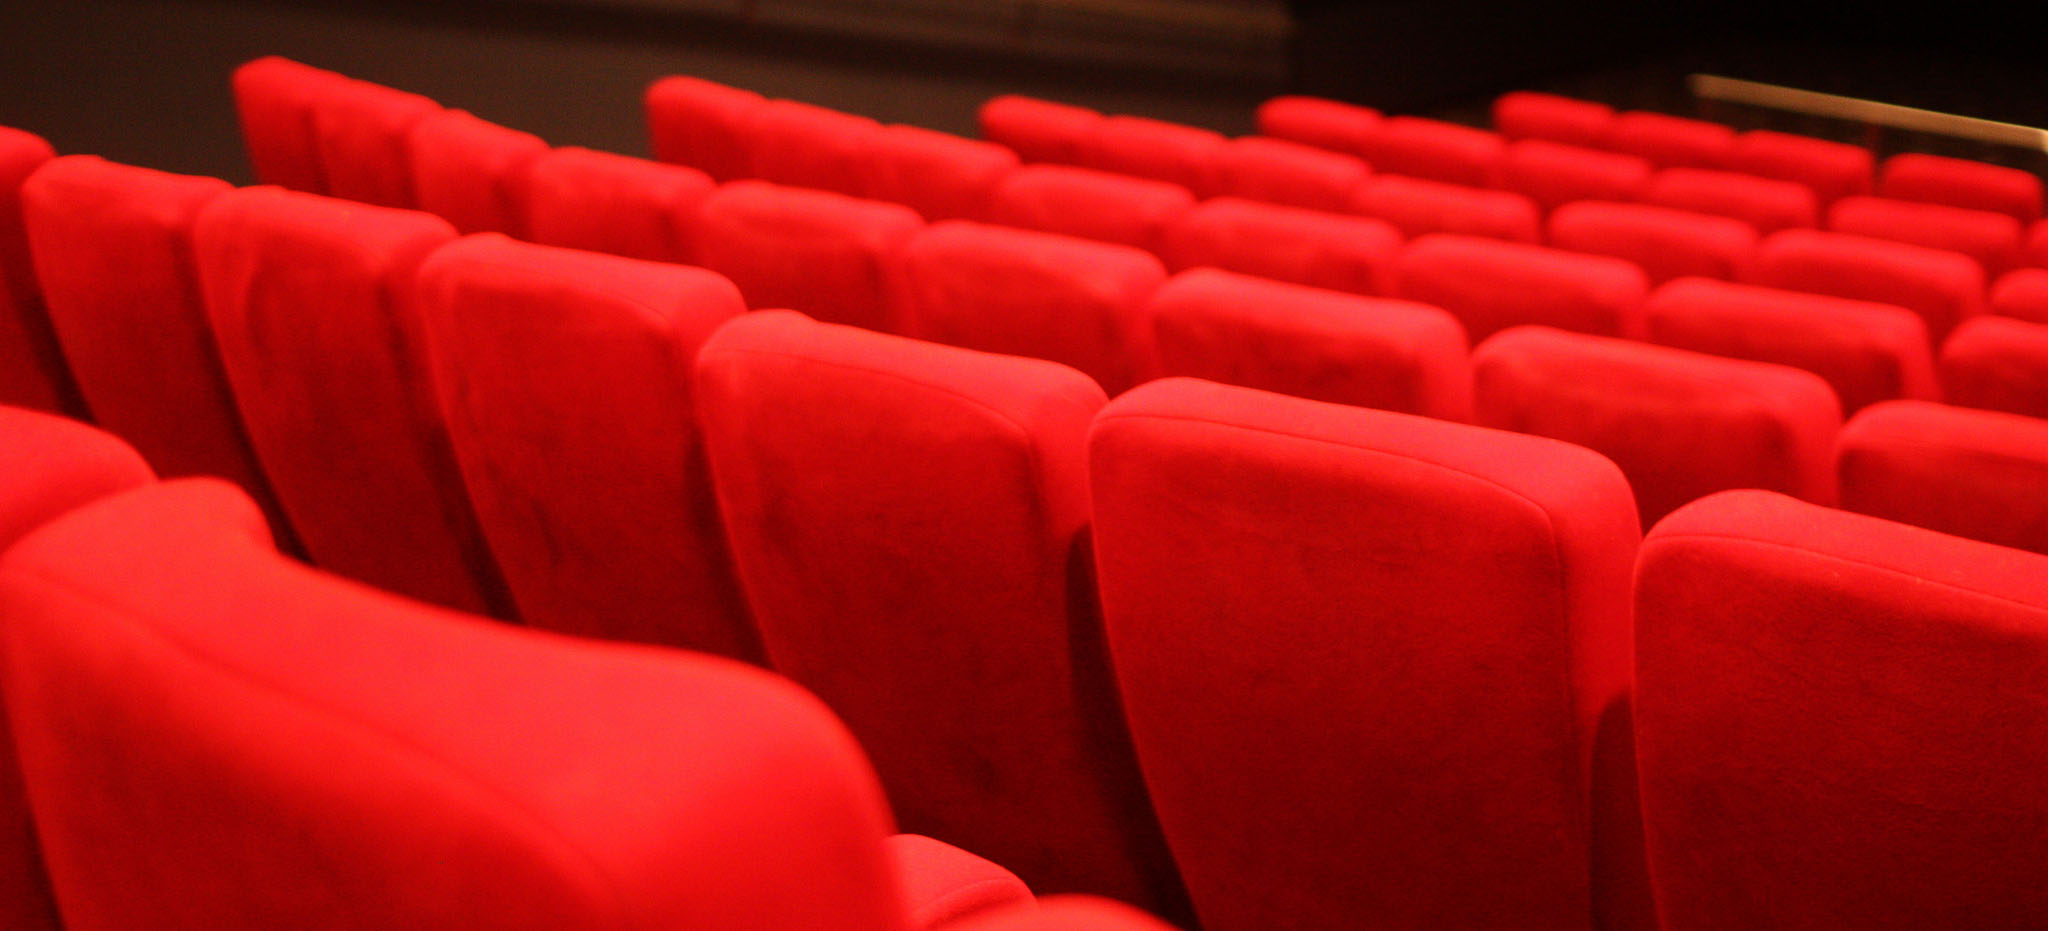 Salle de cinéma, sièges